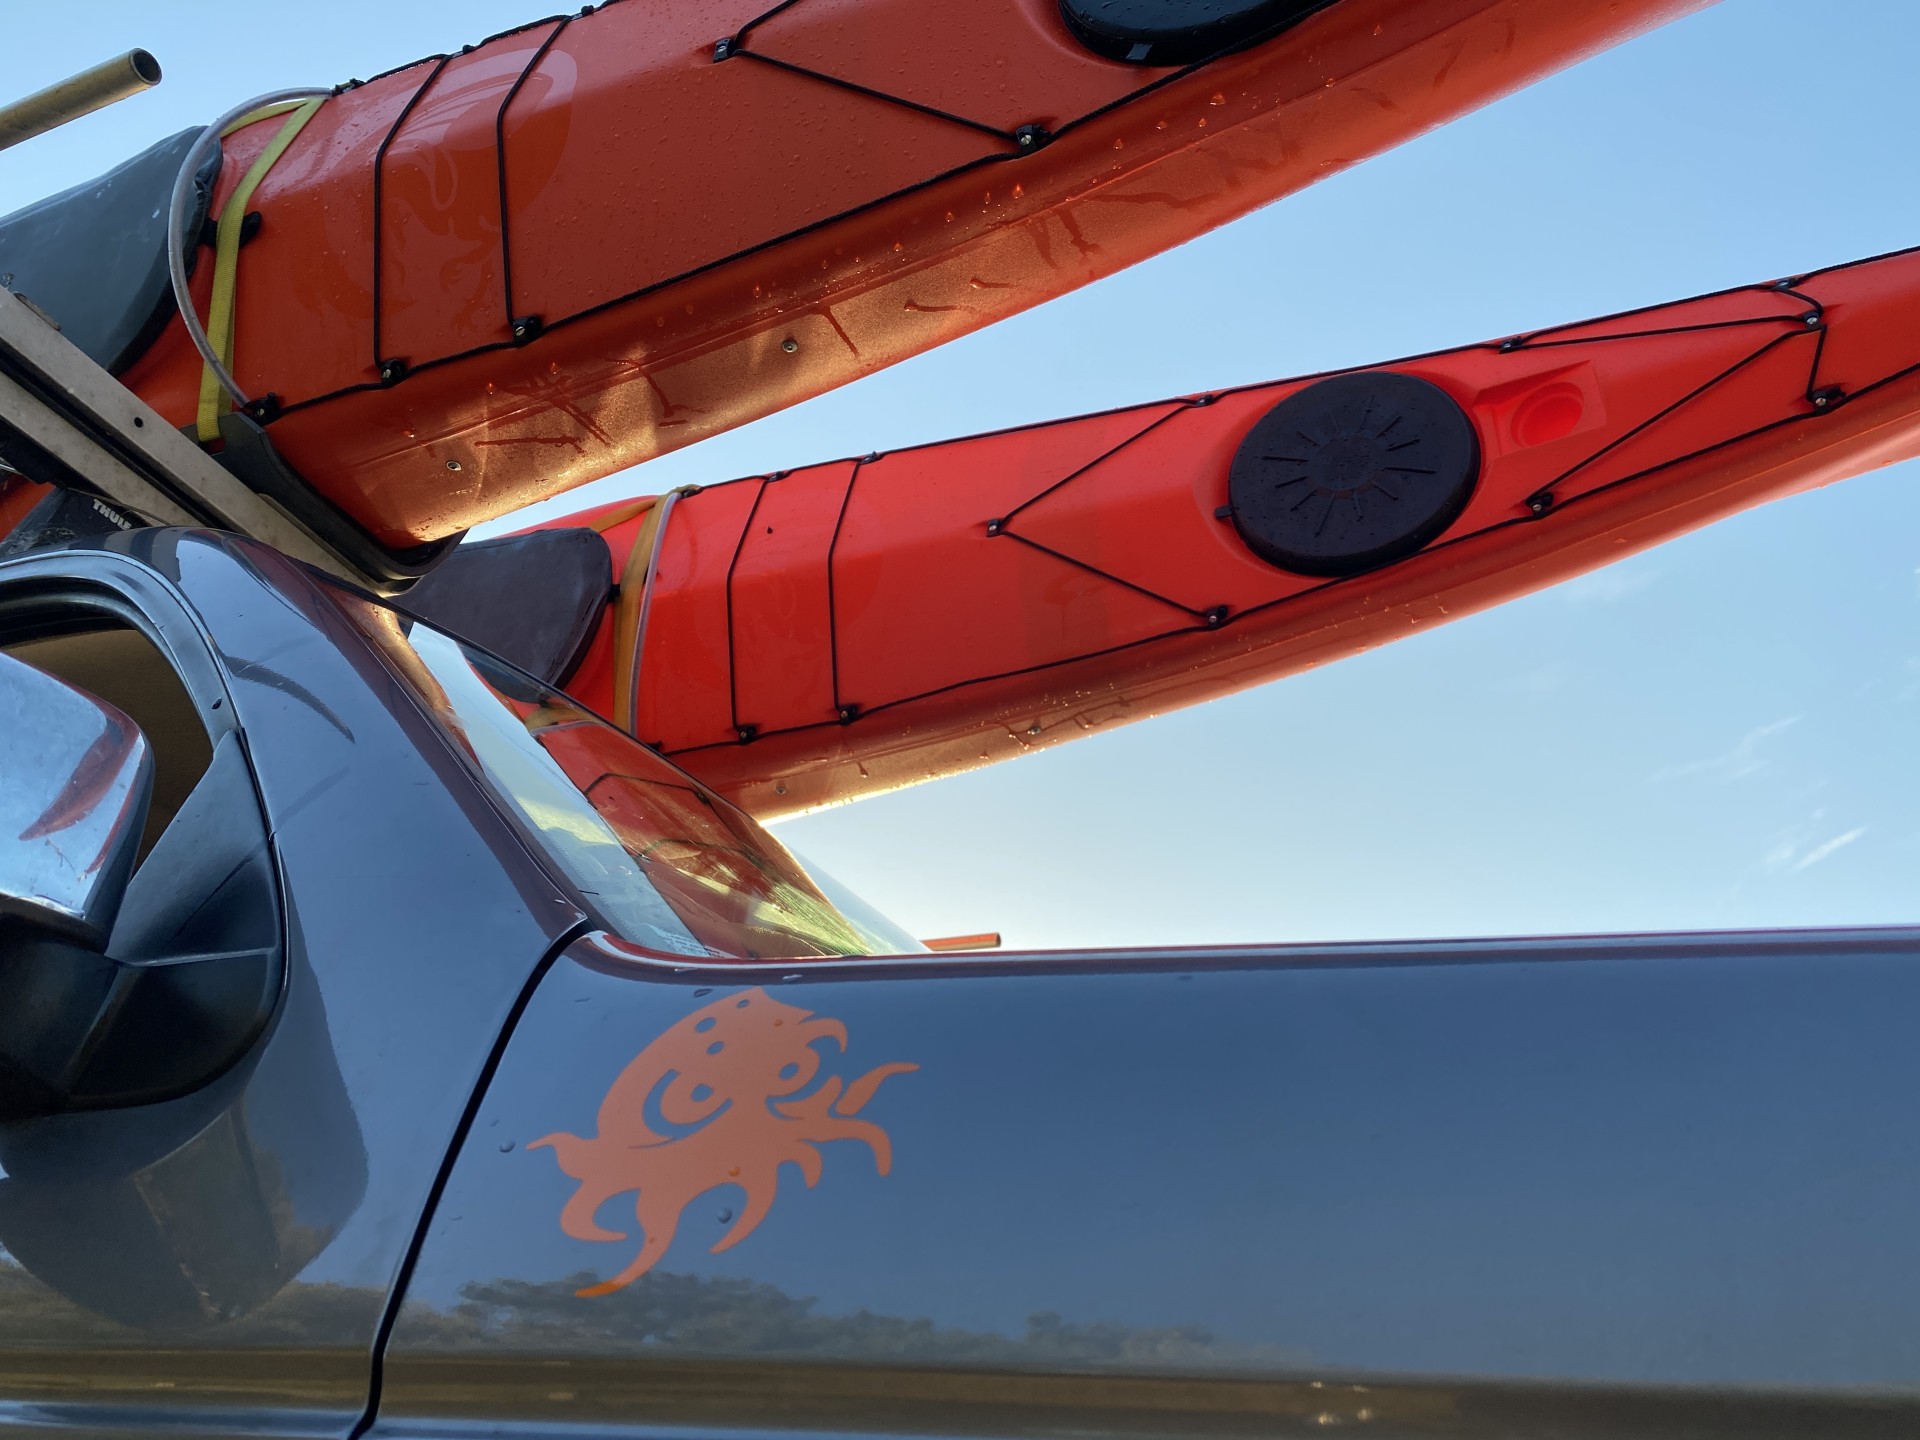 Orange sea kayaks on the reoofrack.